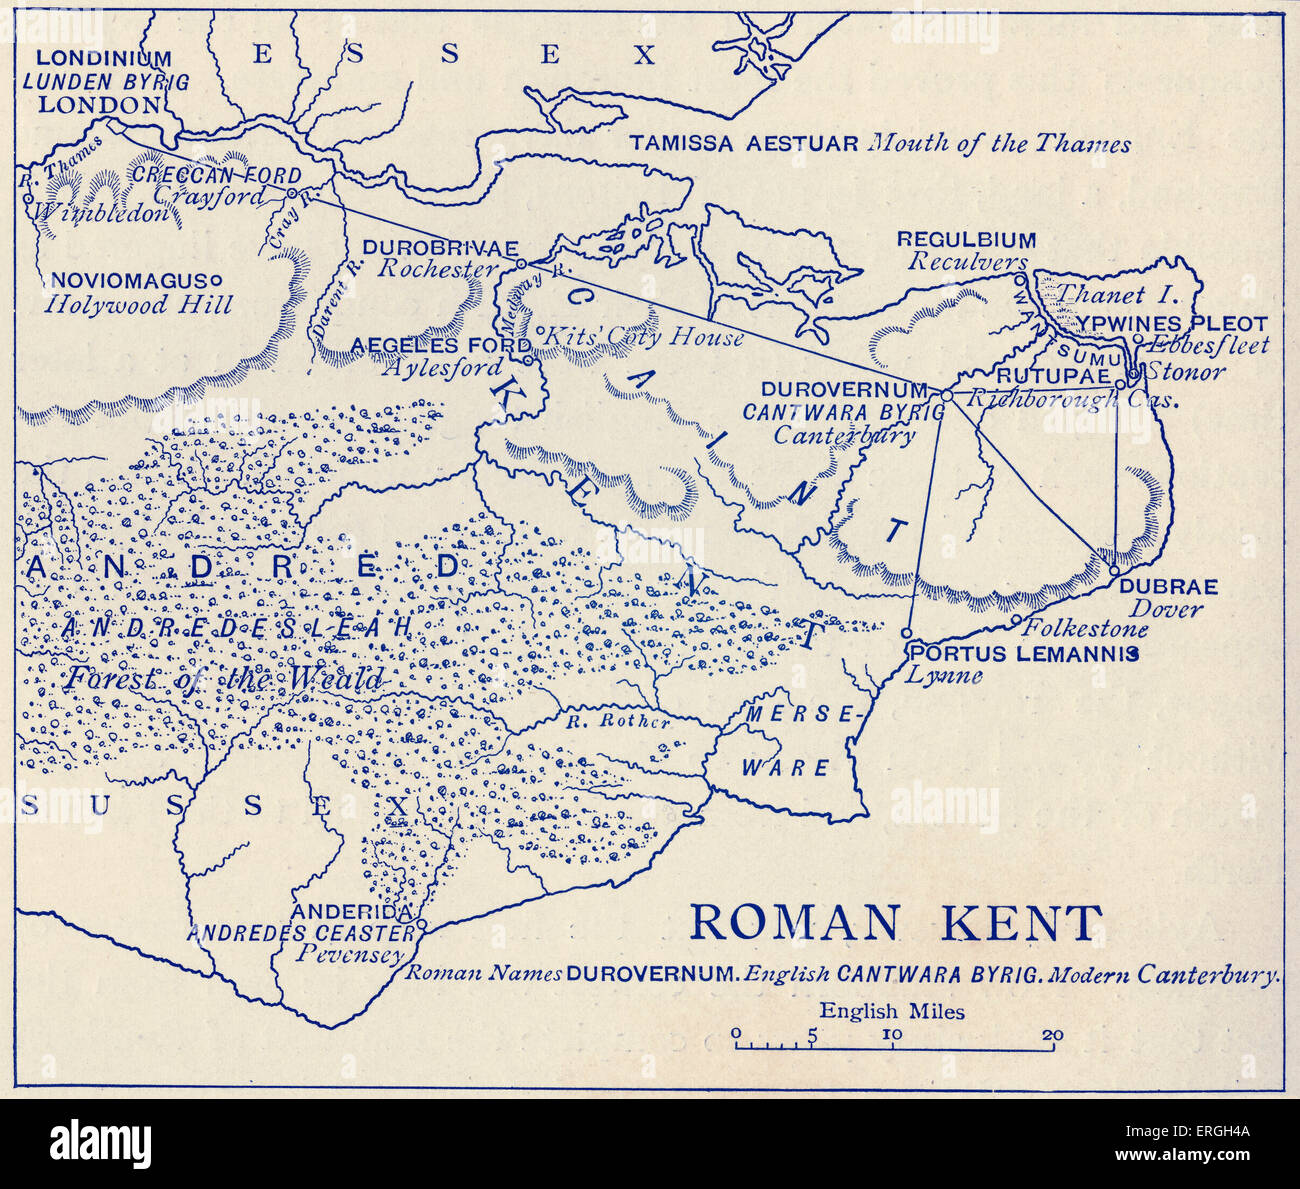 Plan de Roman Kent. La Bretagne romaine était la partie de l'île de Grande-Bretagne contrôlée par l'Empire romain de AD 43 jusqu'c. Banque D'Images